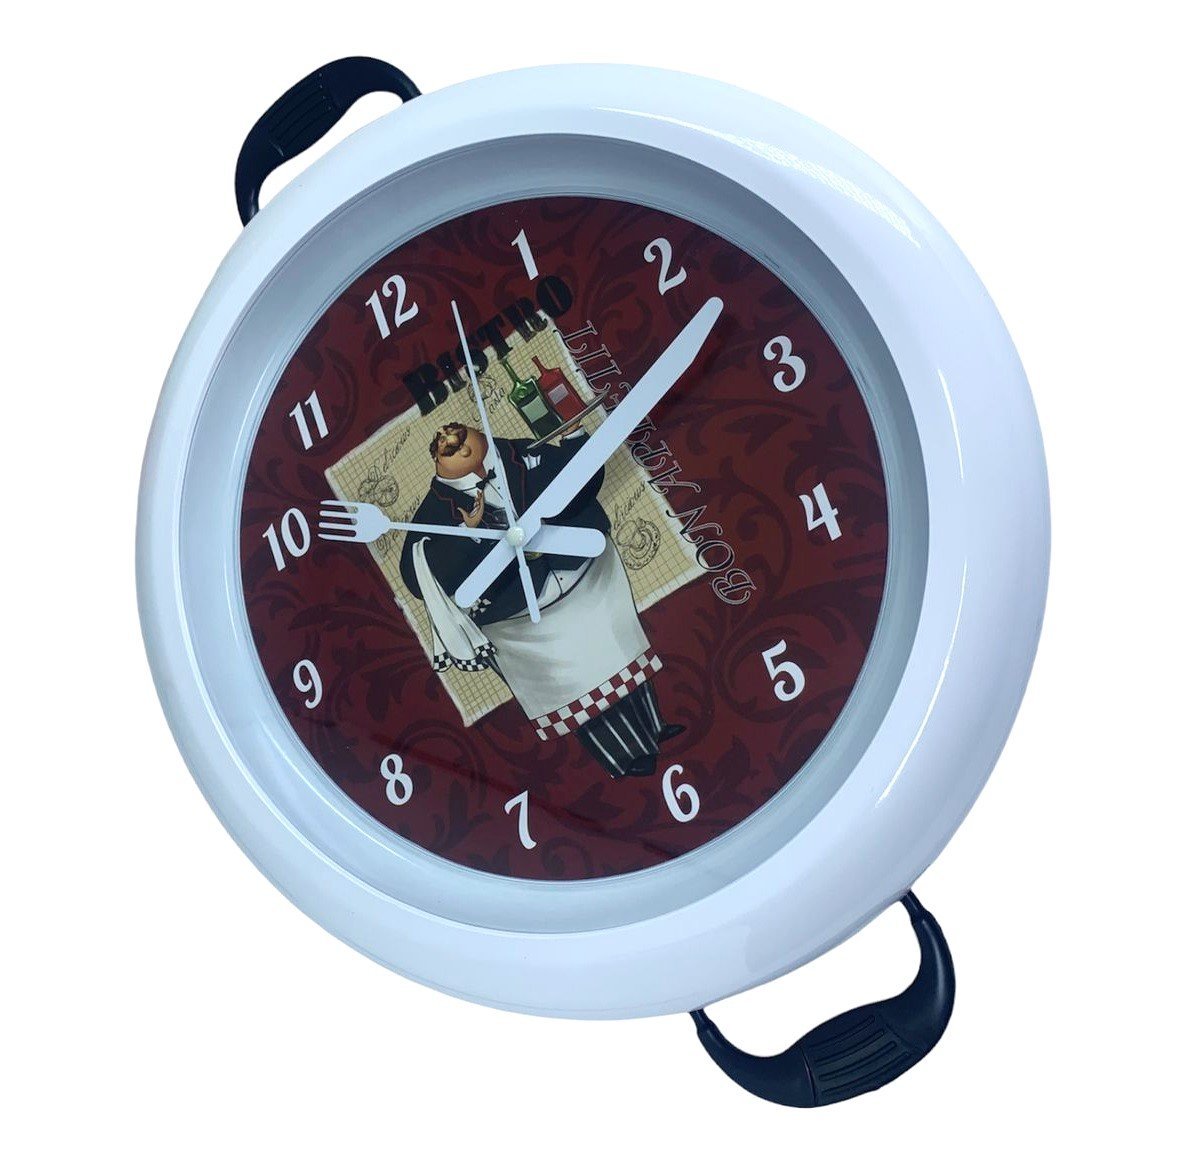 Relógio Parede Cozinha Decorativo Moderno Redondo Panela Bco Quartz Relógio Decorativo, Relógio para - 8